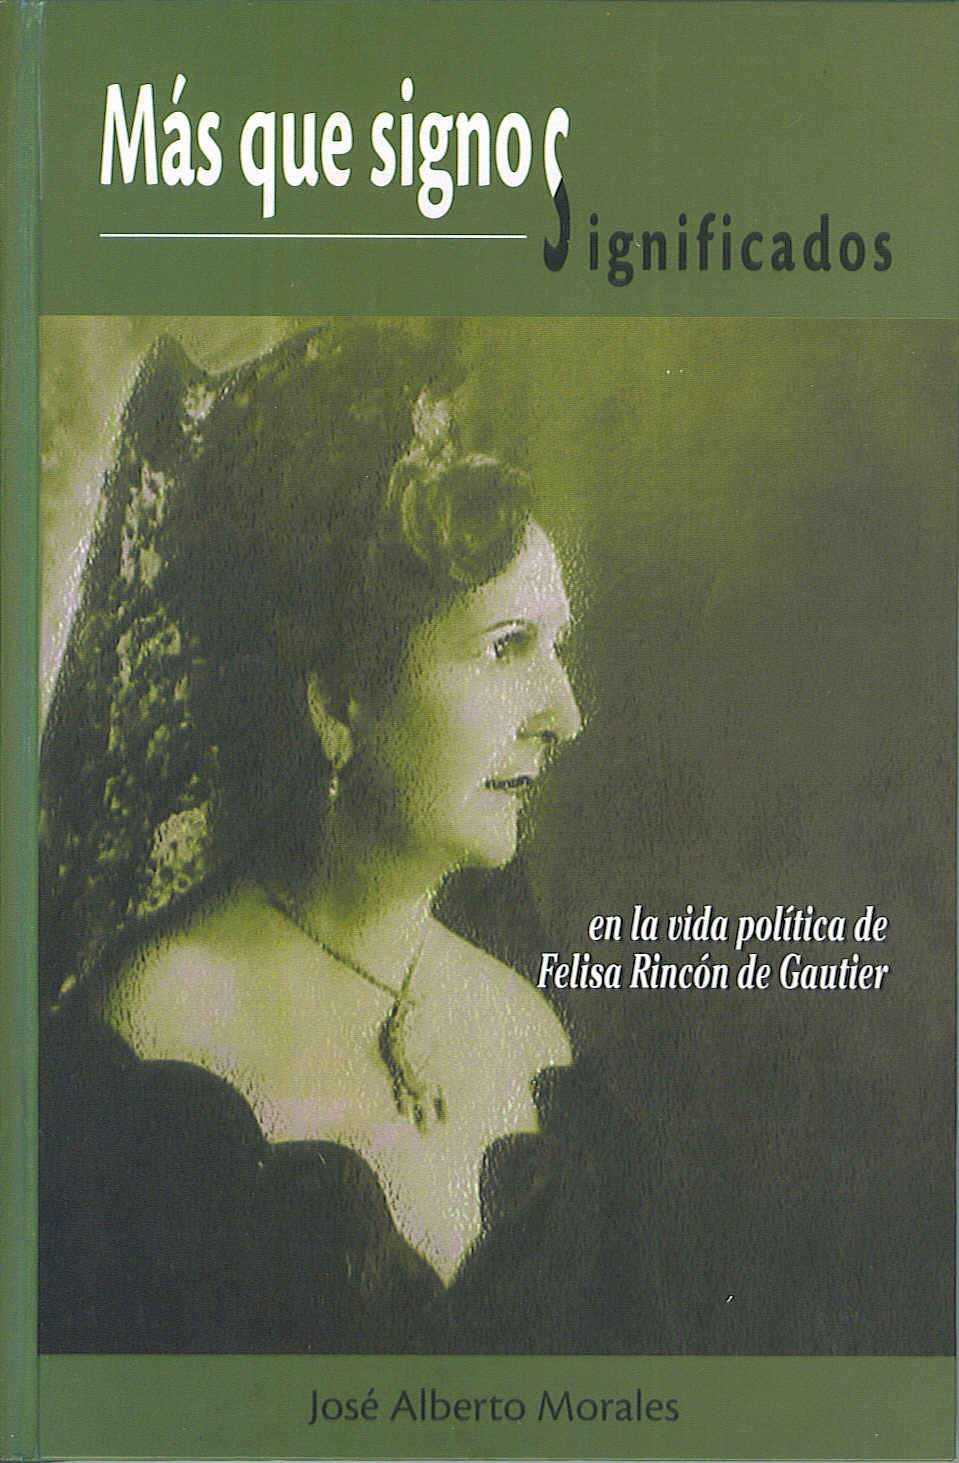 Mas que signos significados en la vida política de Felisa Rincón de Gautier - D'Autores